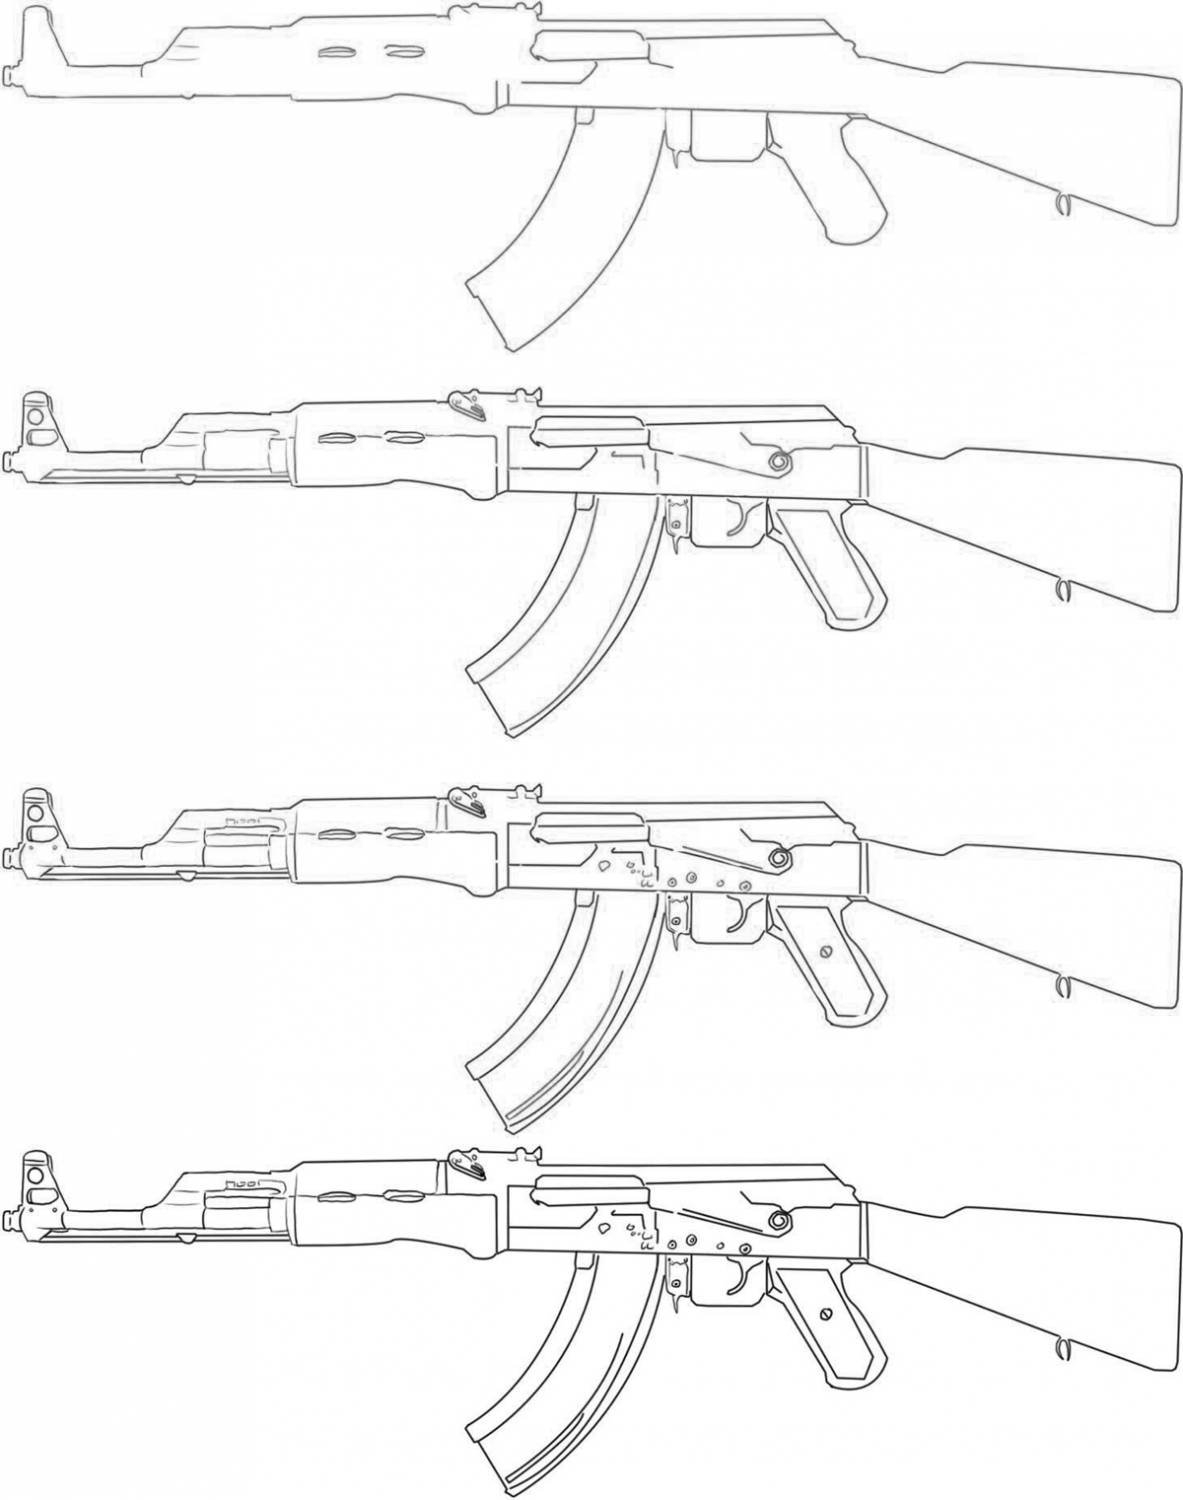 Как сделать оружие из дерева? Самодельное оружие из дерева - чертежи :: SYL.ru